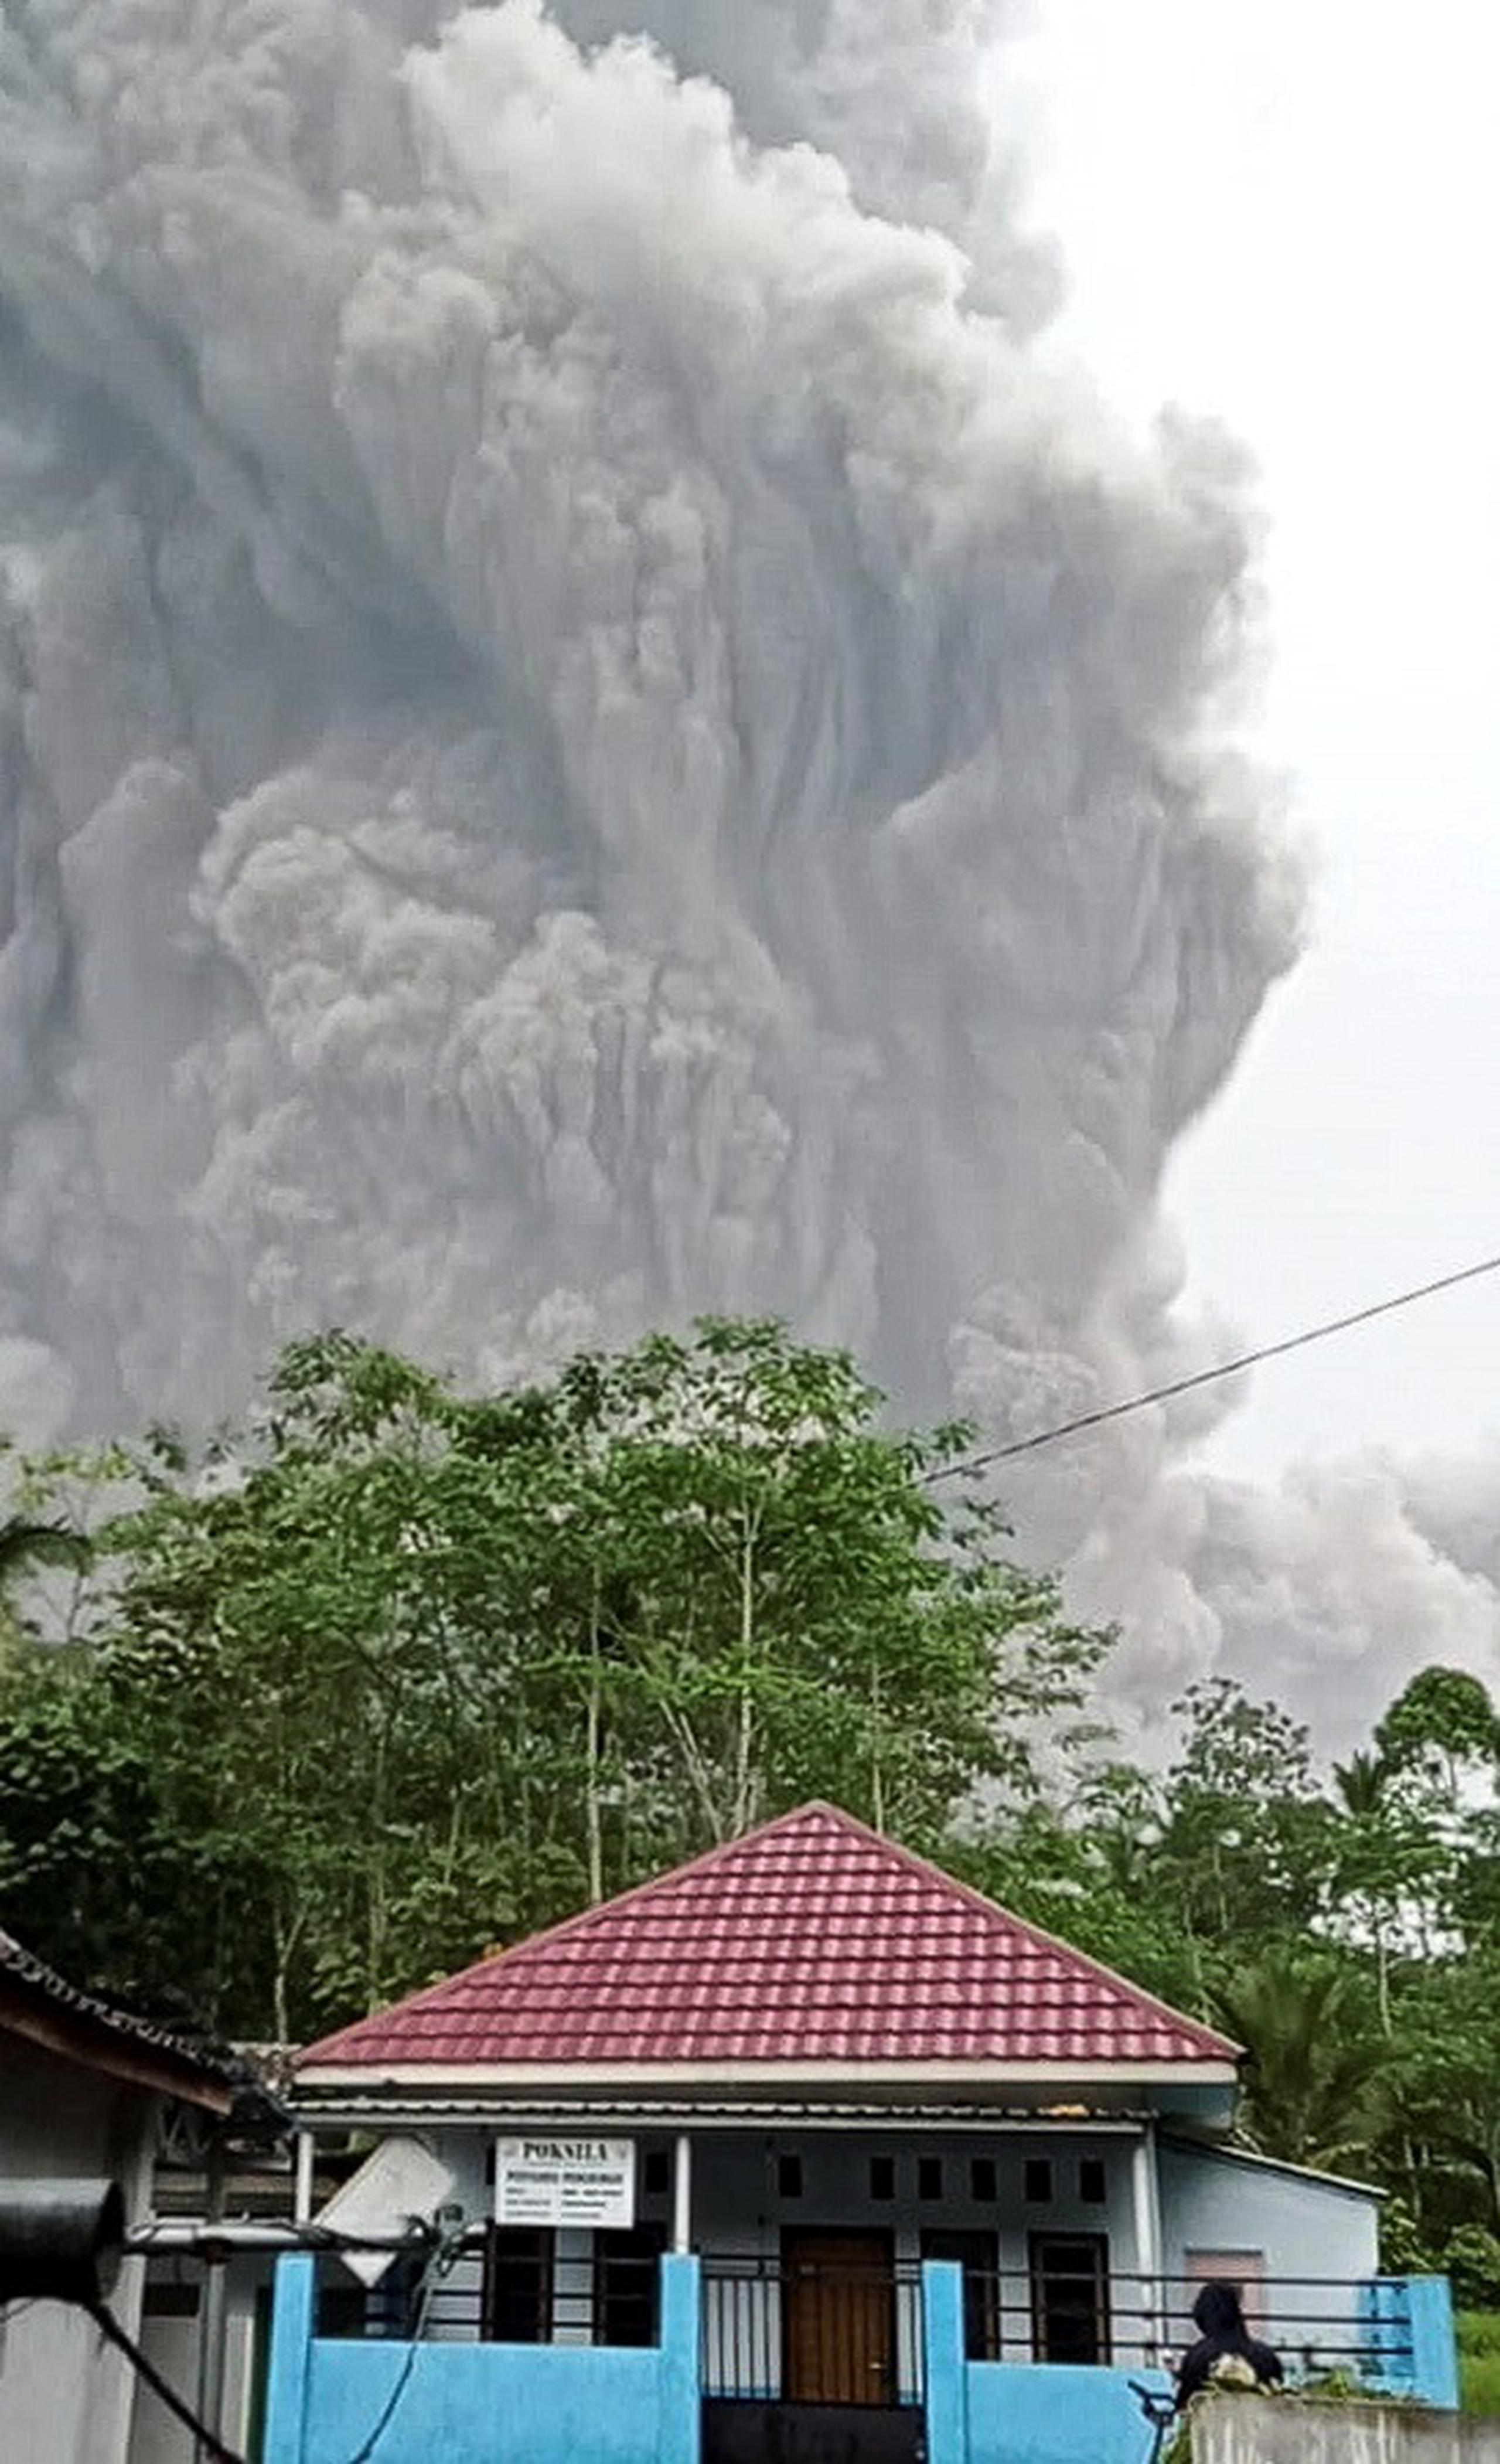 La televisión mostraba la gente corriendo presa del pánico bajo una enorme nube de ceniza, con la cara mojada por la lluvia mezclada con polvo volcánico.